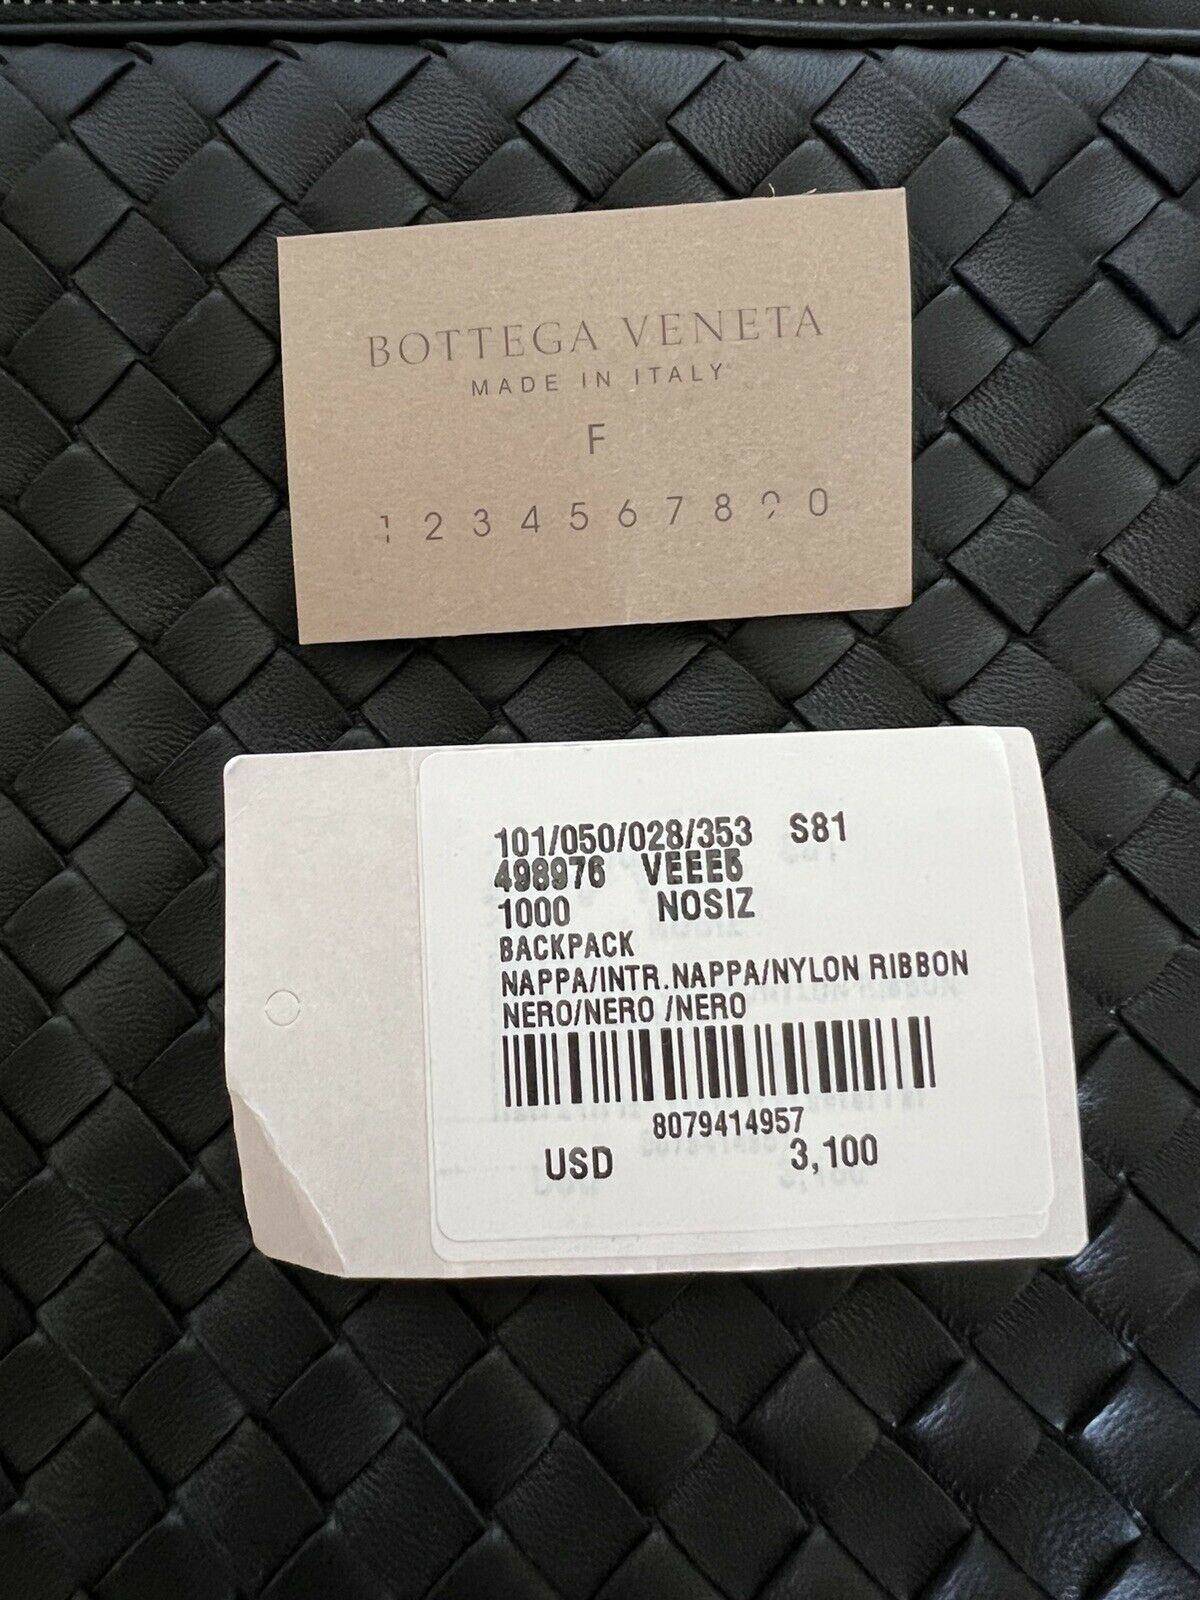 NWT 3100 $ Bottega Veneta Leder Intrecciato Rucksack Schwarz Hergestellt in Italien 498976